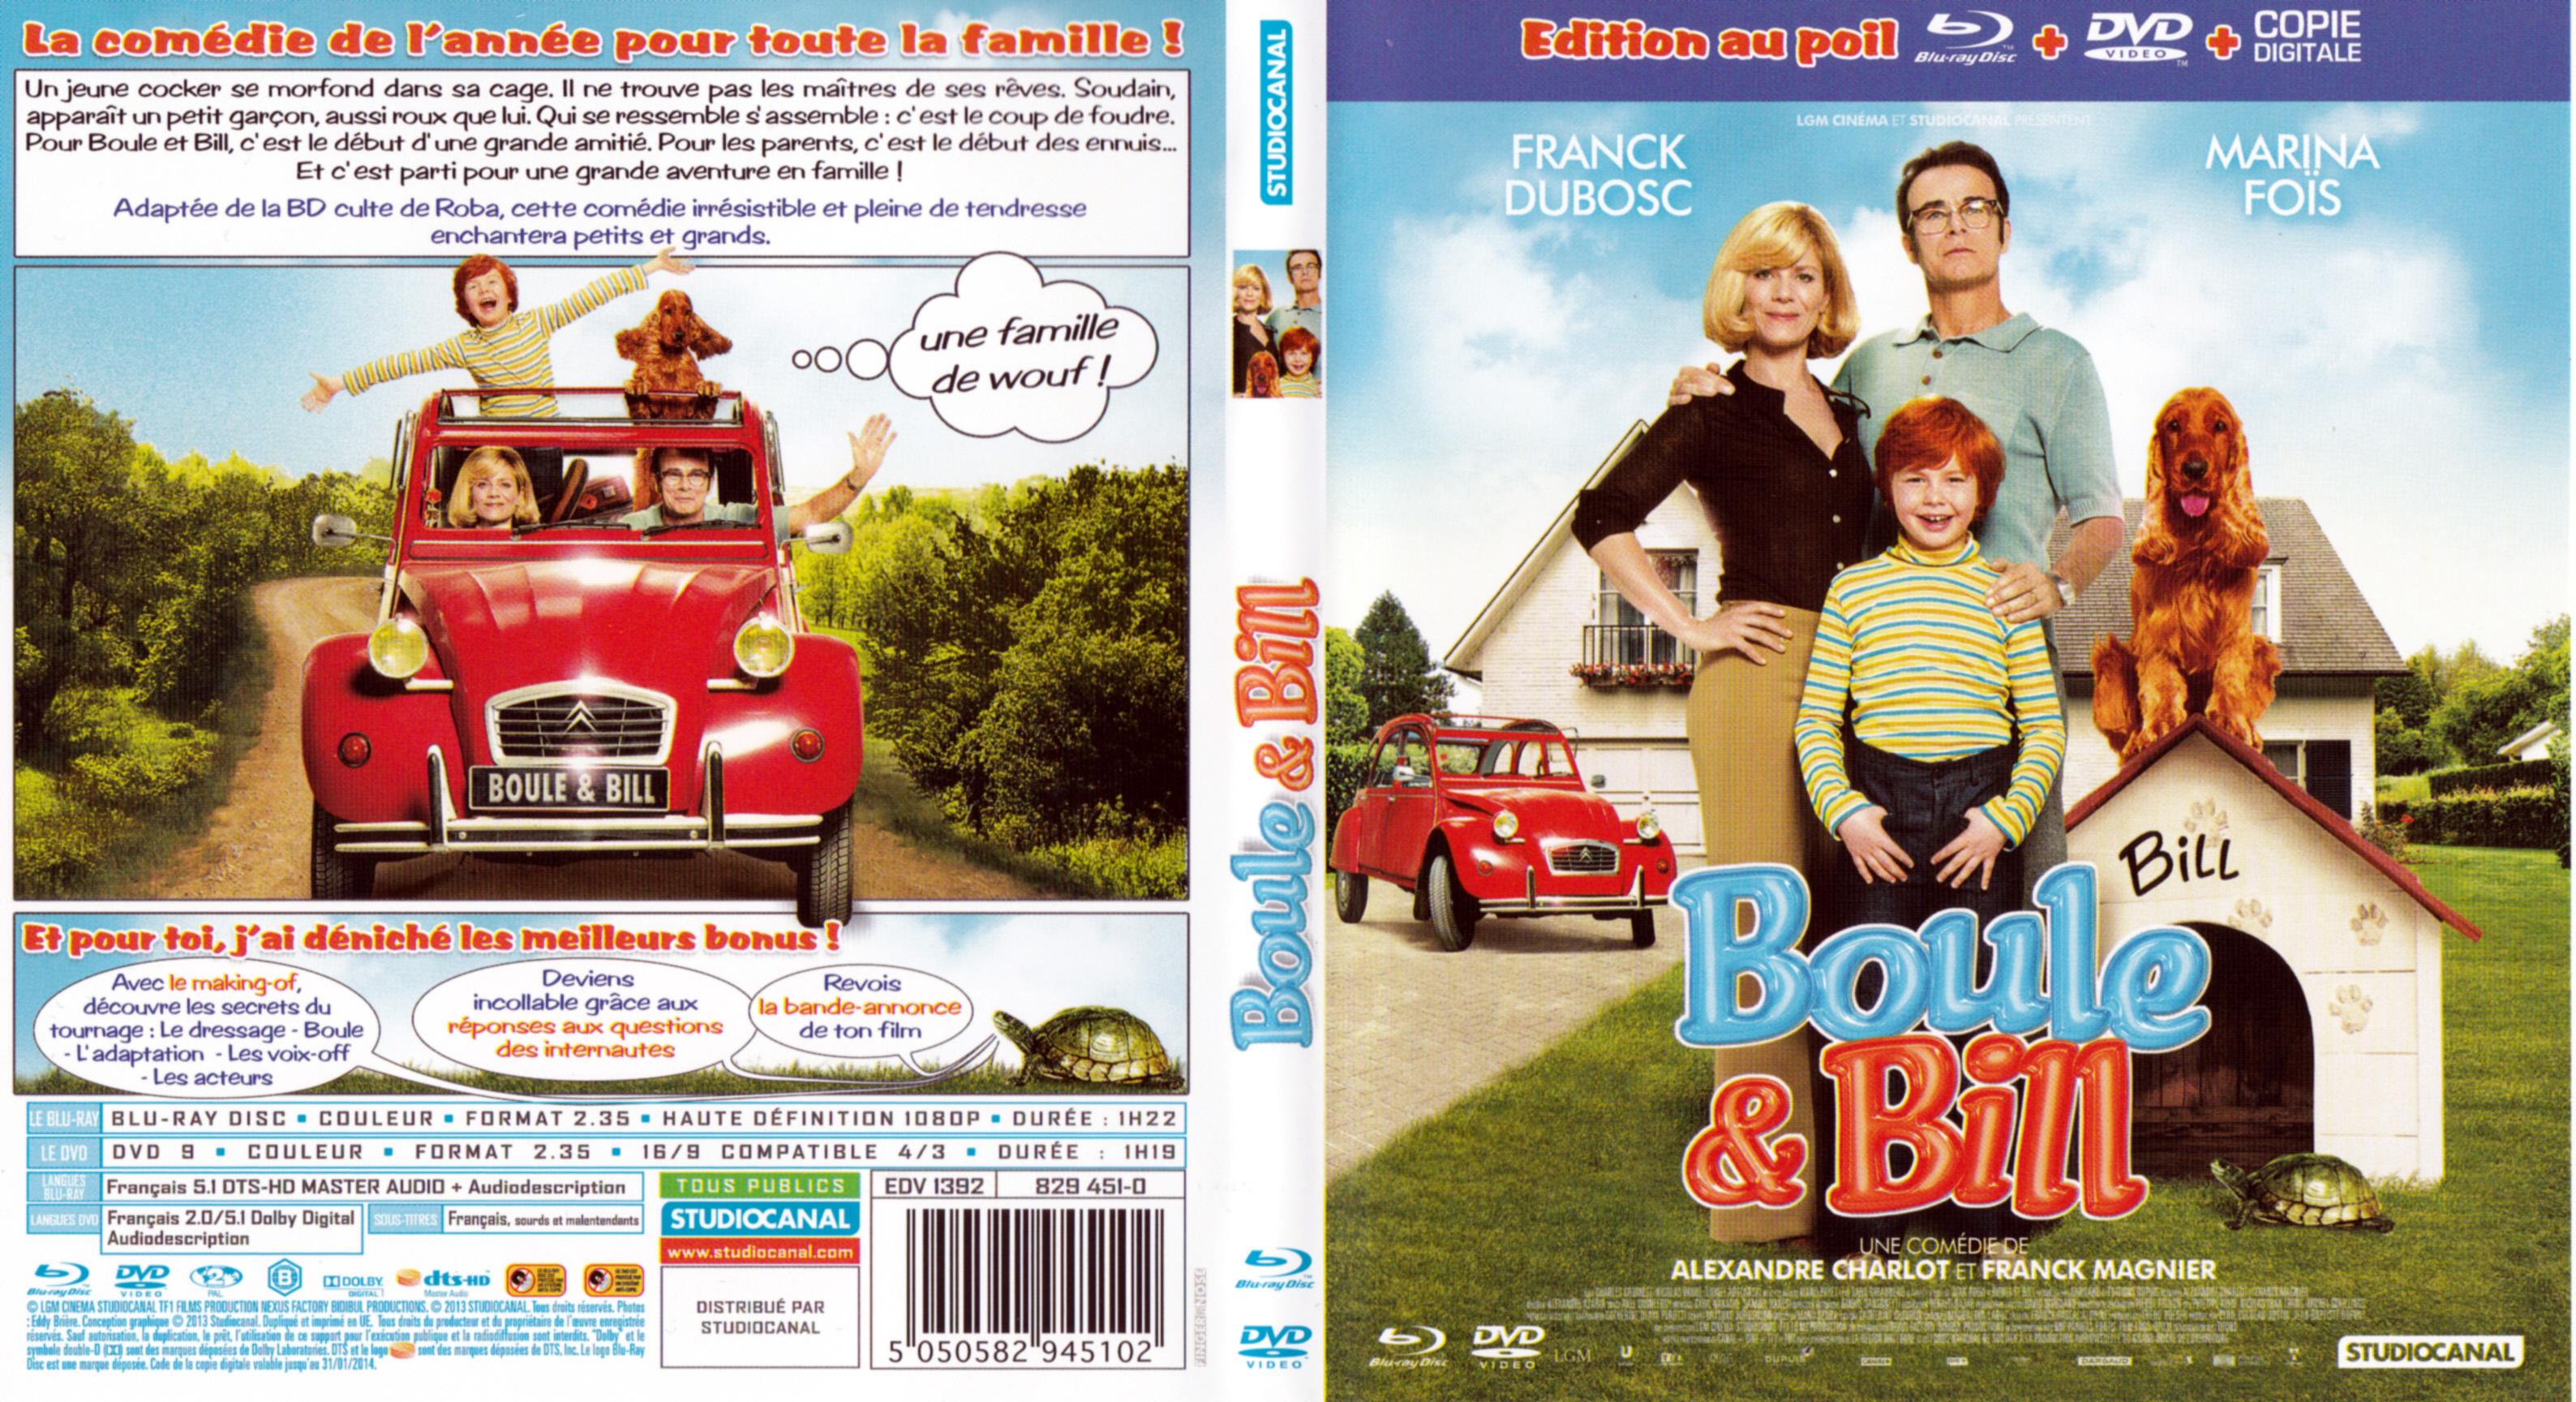 Jaquette DVD Boule et Bill (BLU-RAY)